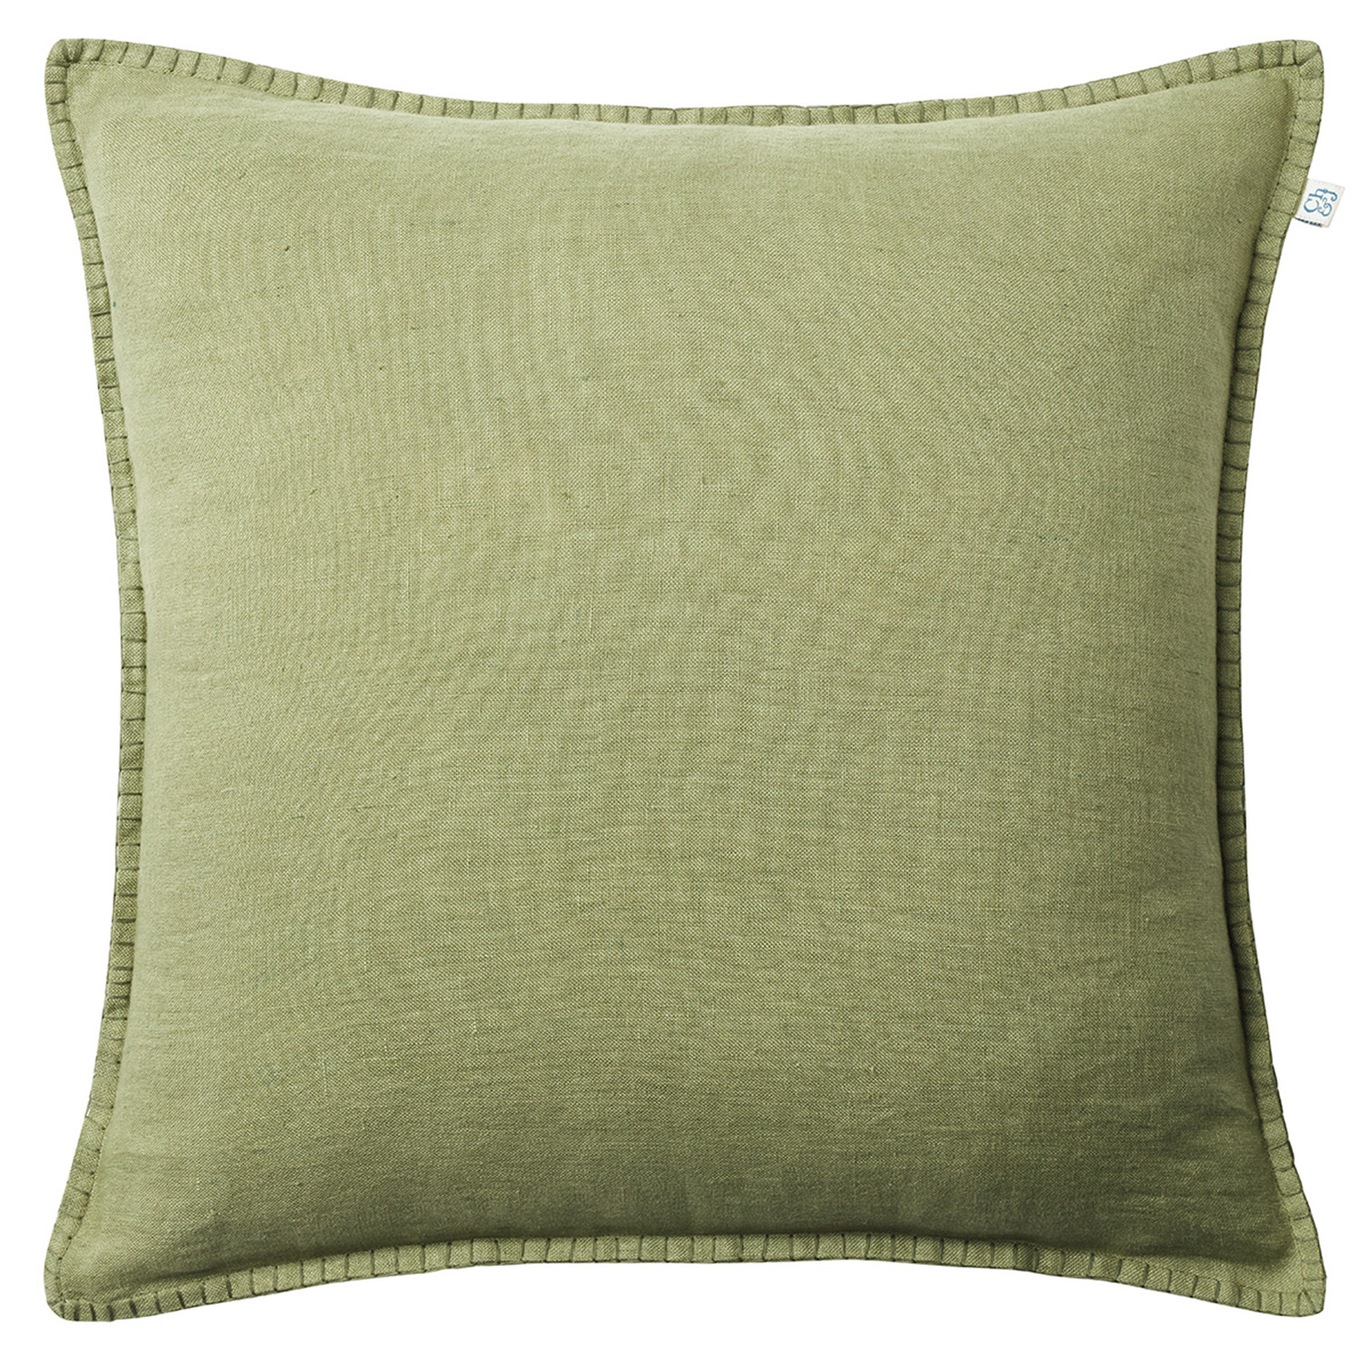 Arun Cushion Cover Cactus Green, 50x50 cm